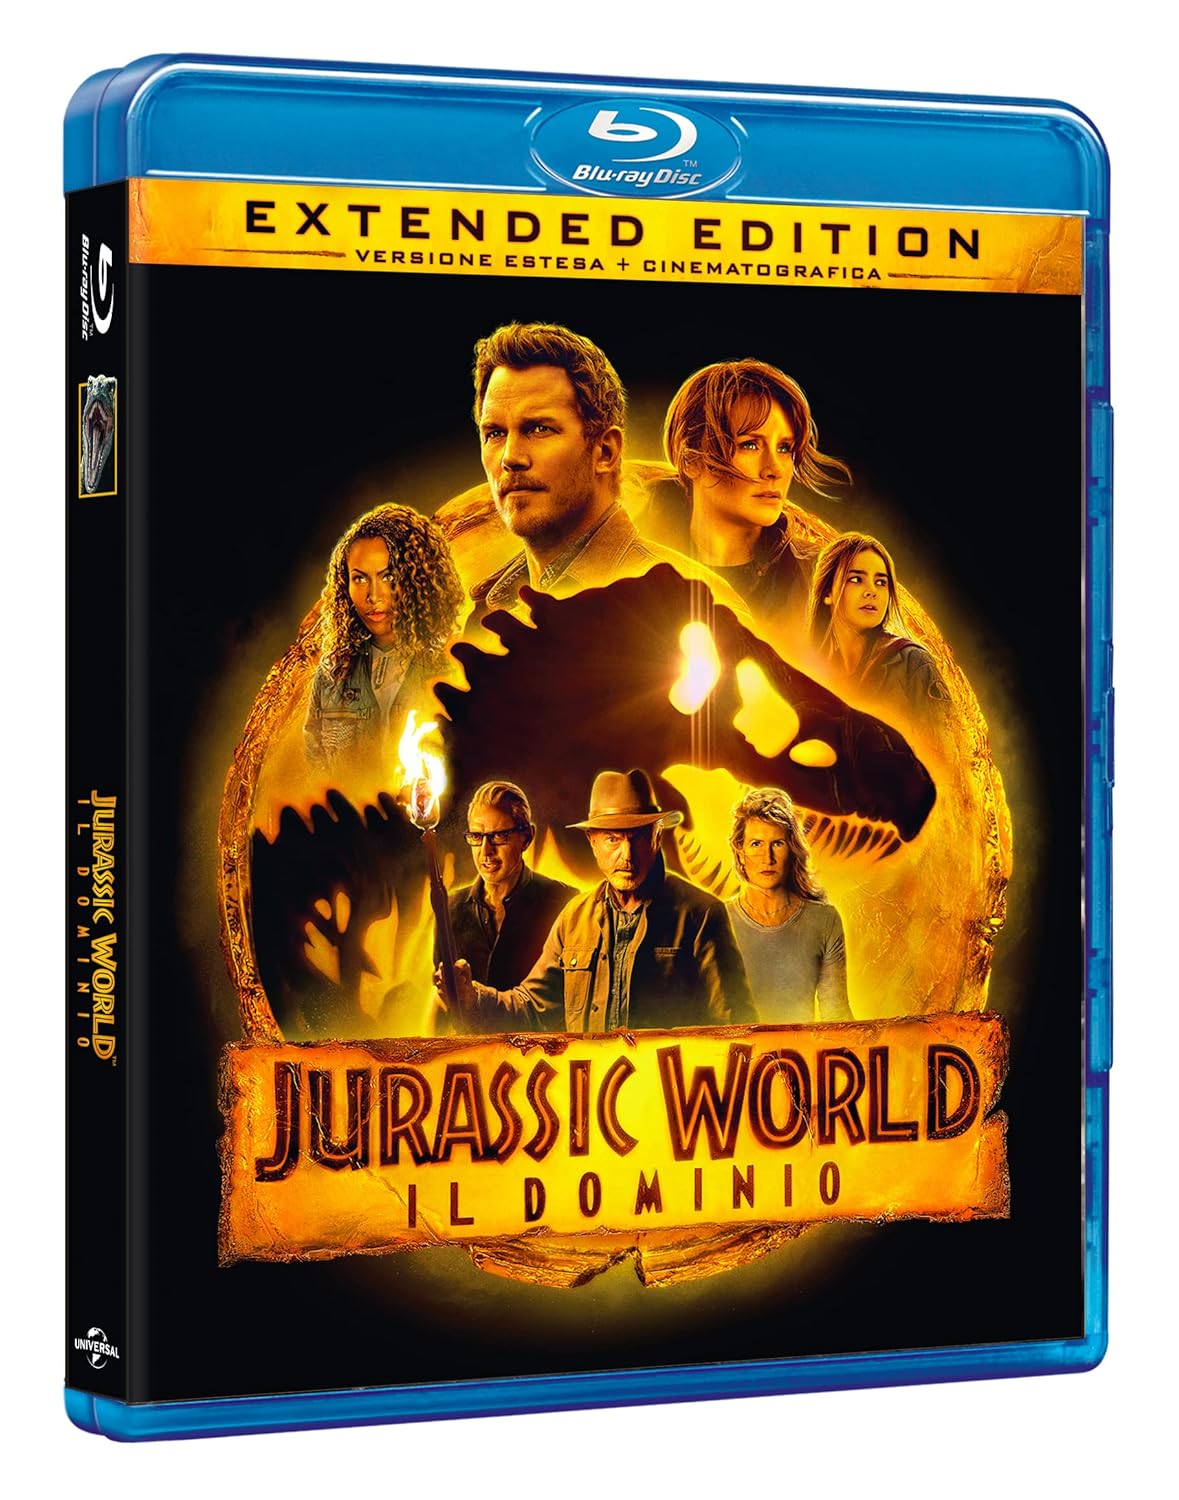 Jurassic World Il Dominio in Blu-ray su Amazon